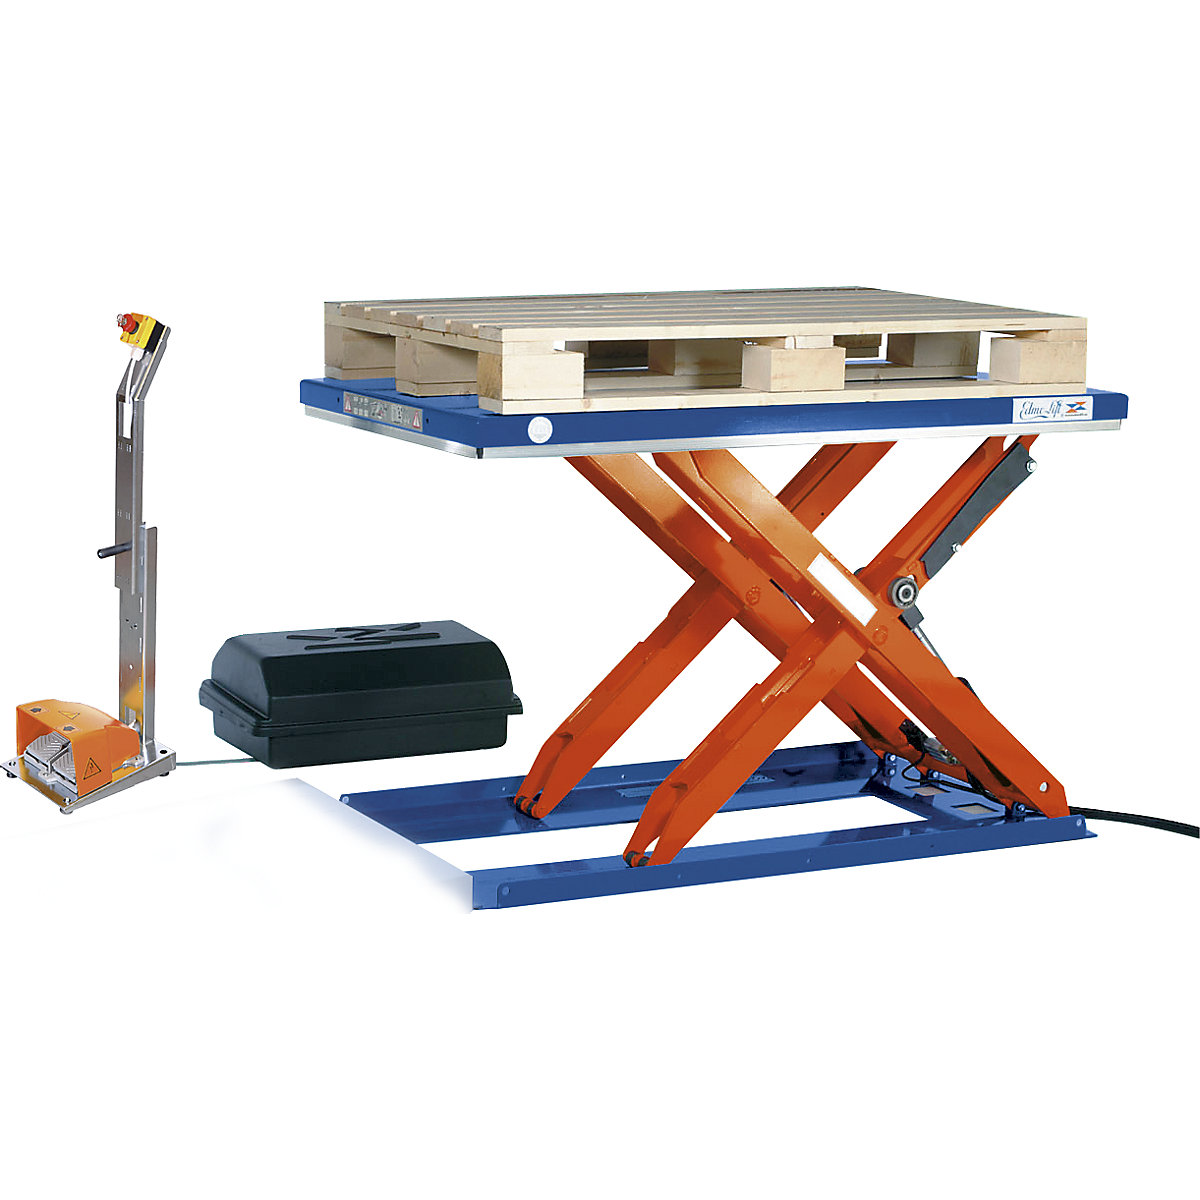 Płaski stół podnośny – Edmolift, dł. x szer. 1500 x 1000 mm, zakres podnoszenia do 800 mm, platforma zamknięta, 400 V, nożny element obsługi-5